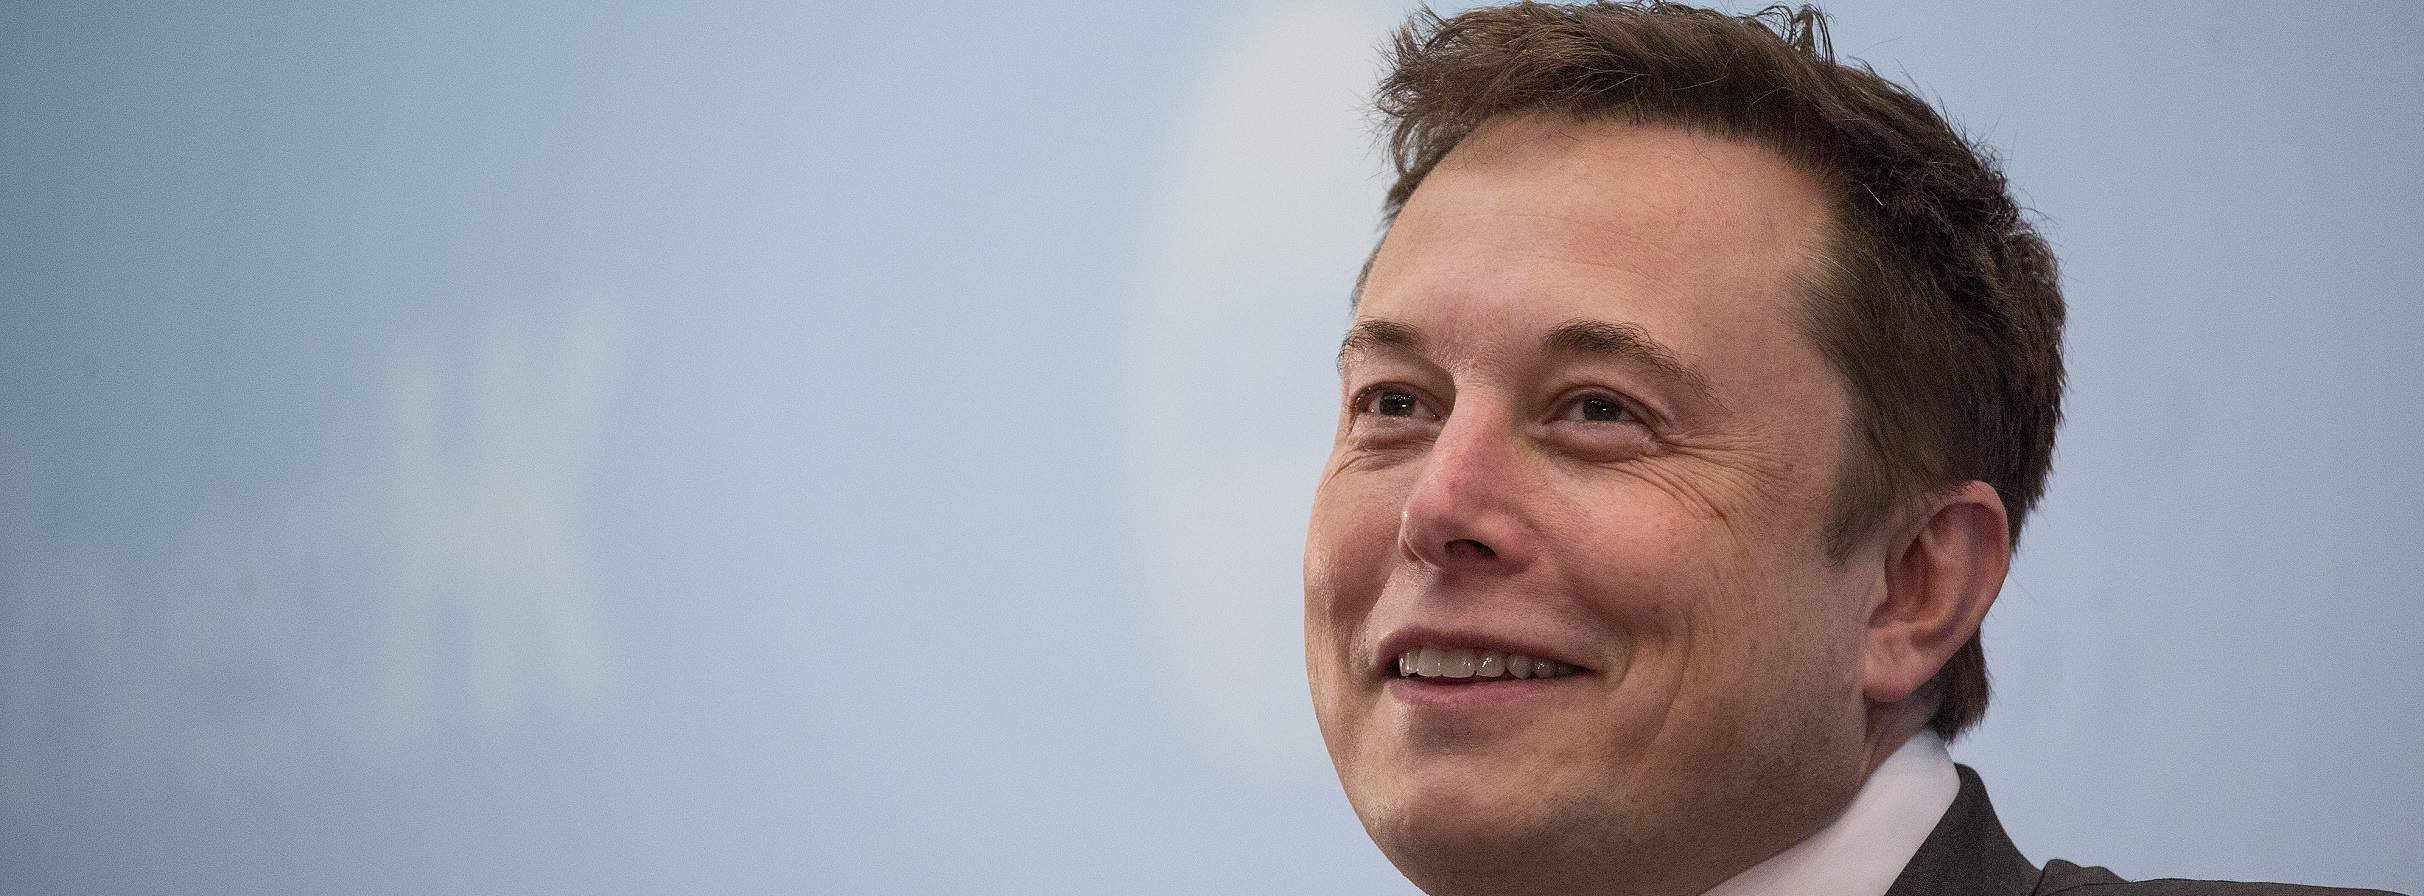 CEO da Tesla, Elon Musk, comenta sobre o futuro do Bitcoin